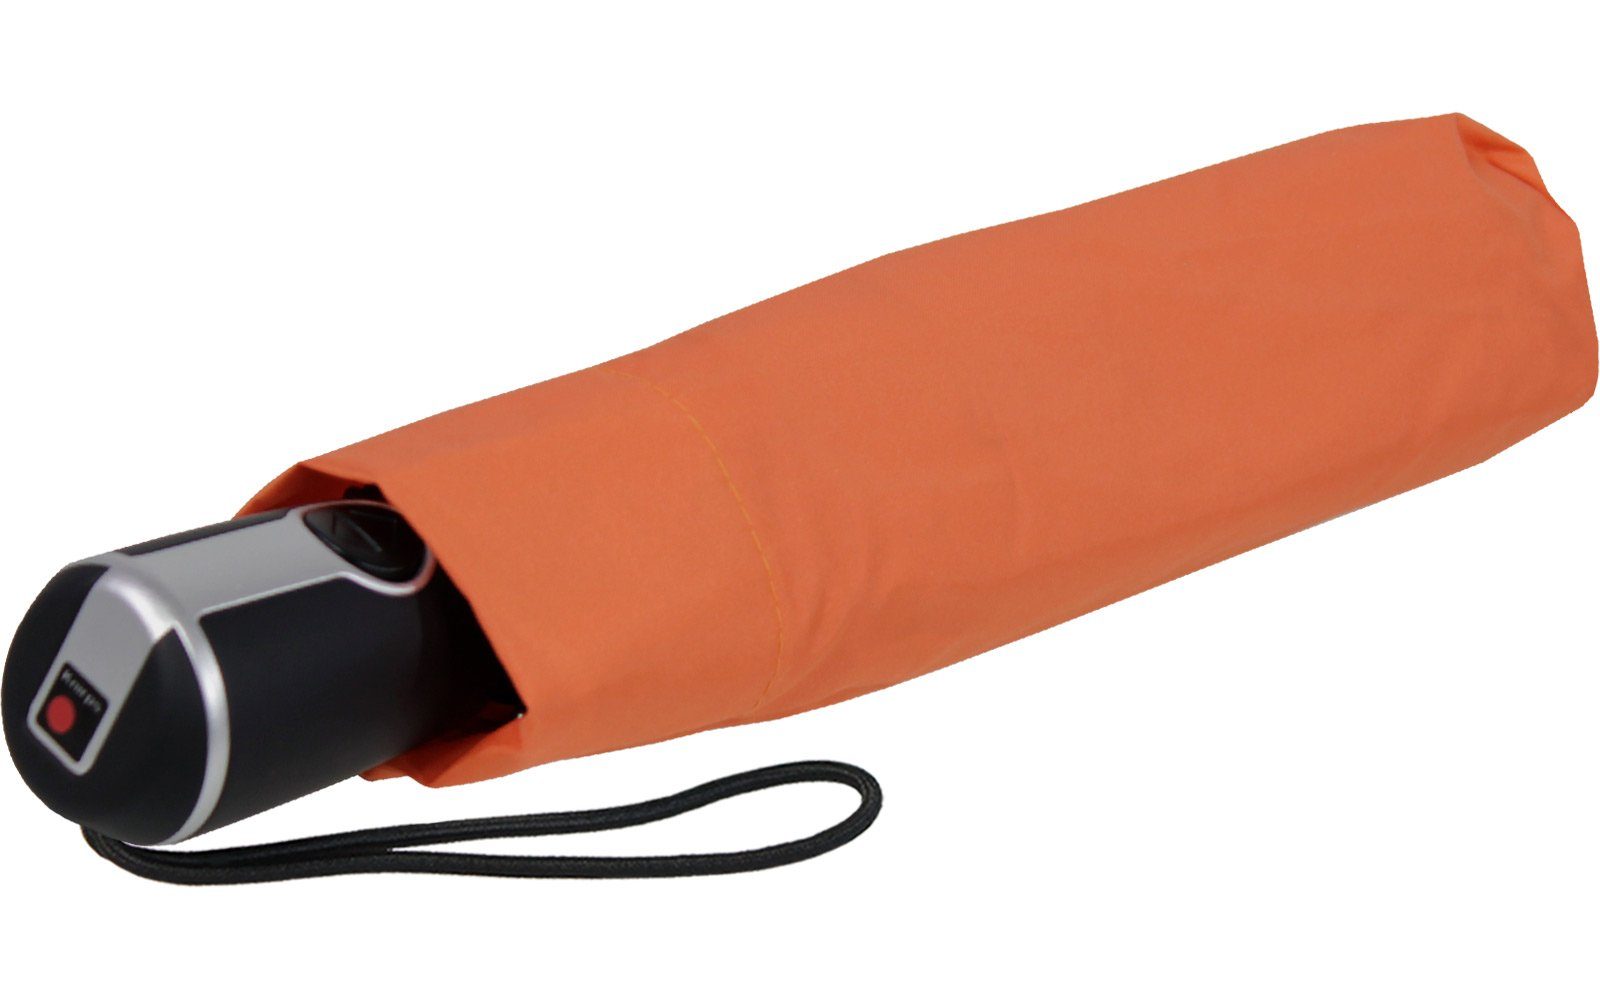 Knirps® Taschenregenschirm Large große, stabile mit Auf-Zu-Automatik, der Begleiter orange Duomatic